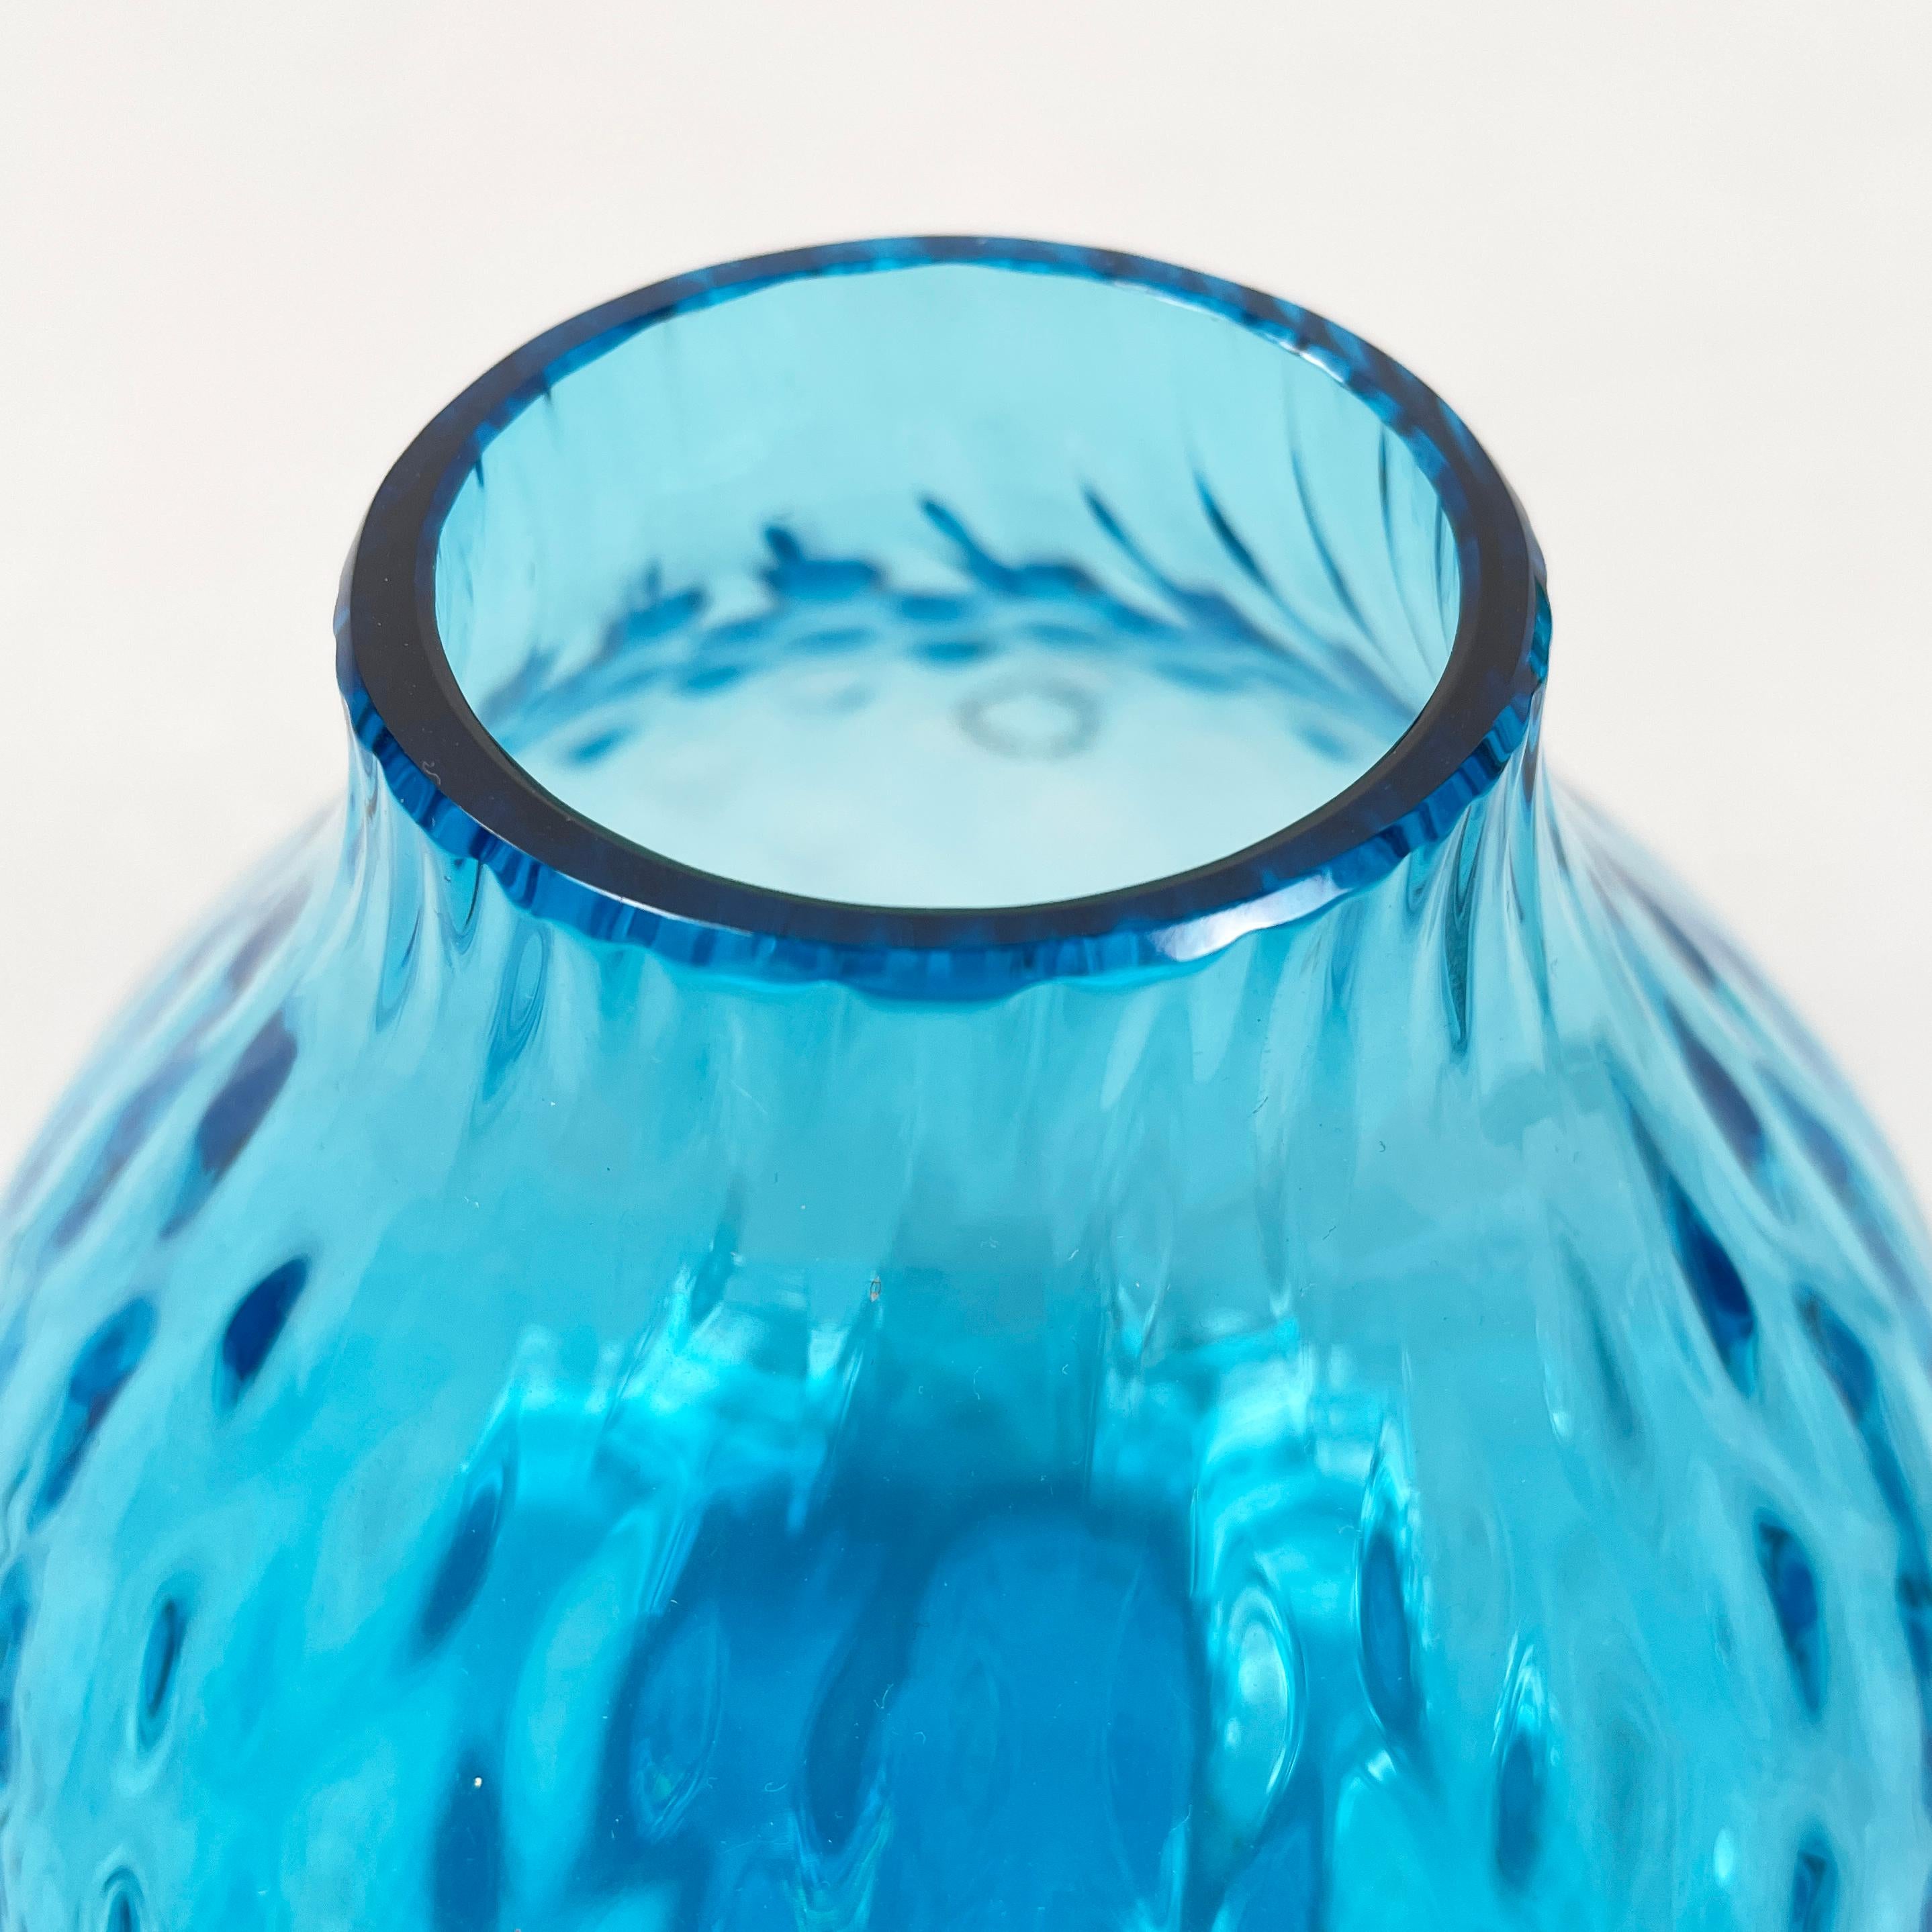 Italienische Moderne Runde Vase aus hellblauem Muranoglas von Venini 1990er Jahre (Ende des 20. Jahrhunderts)